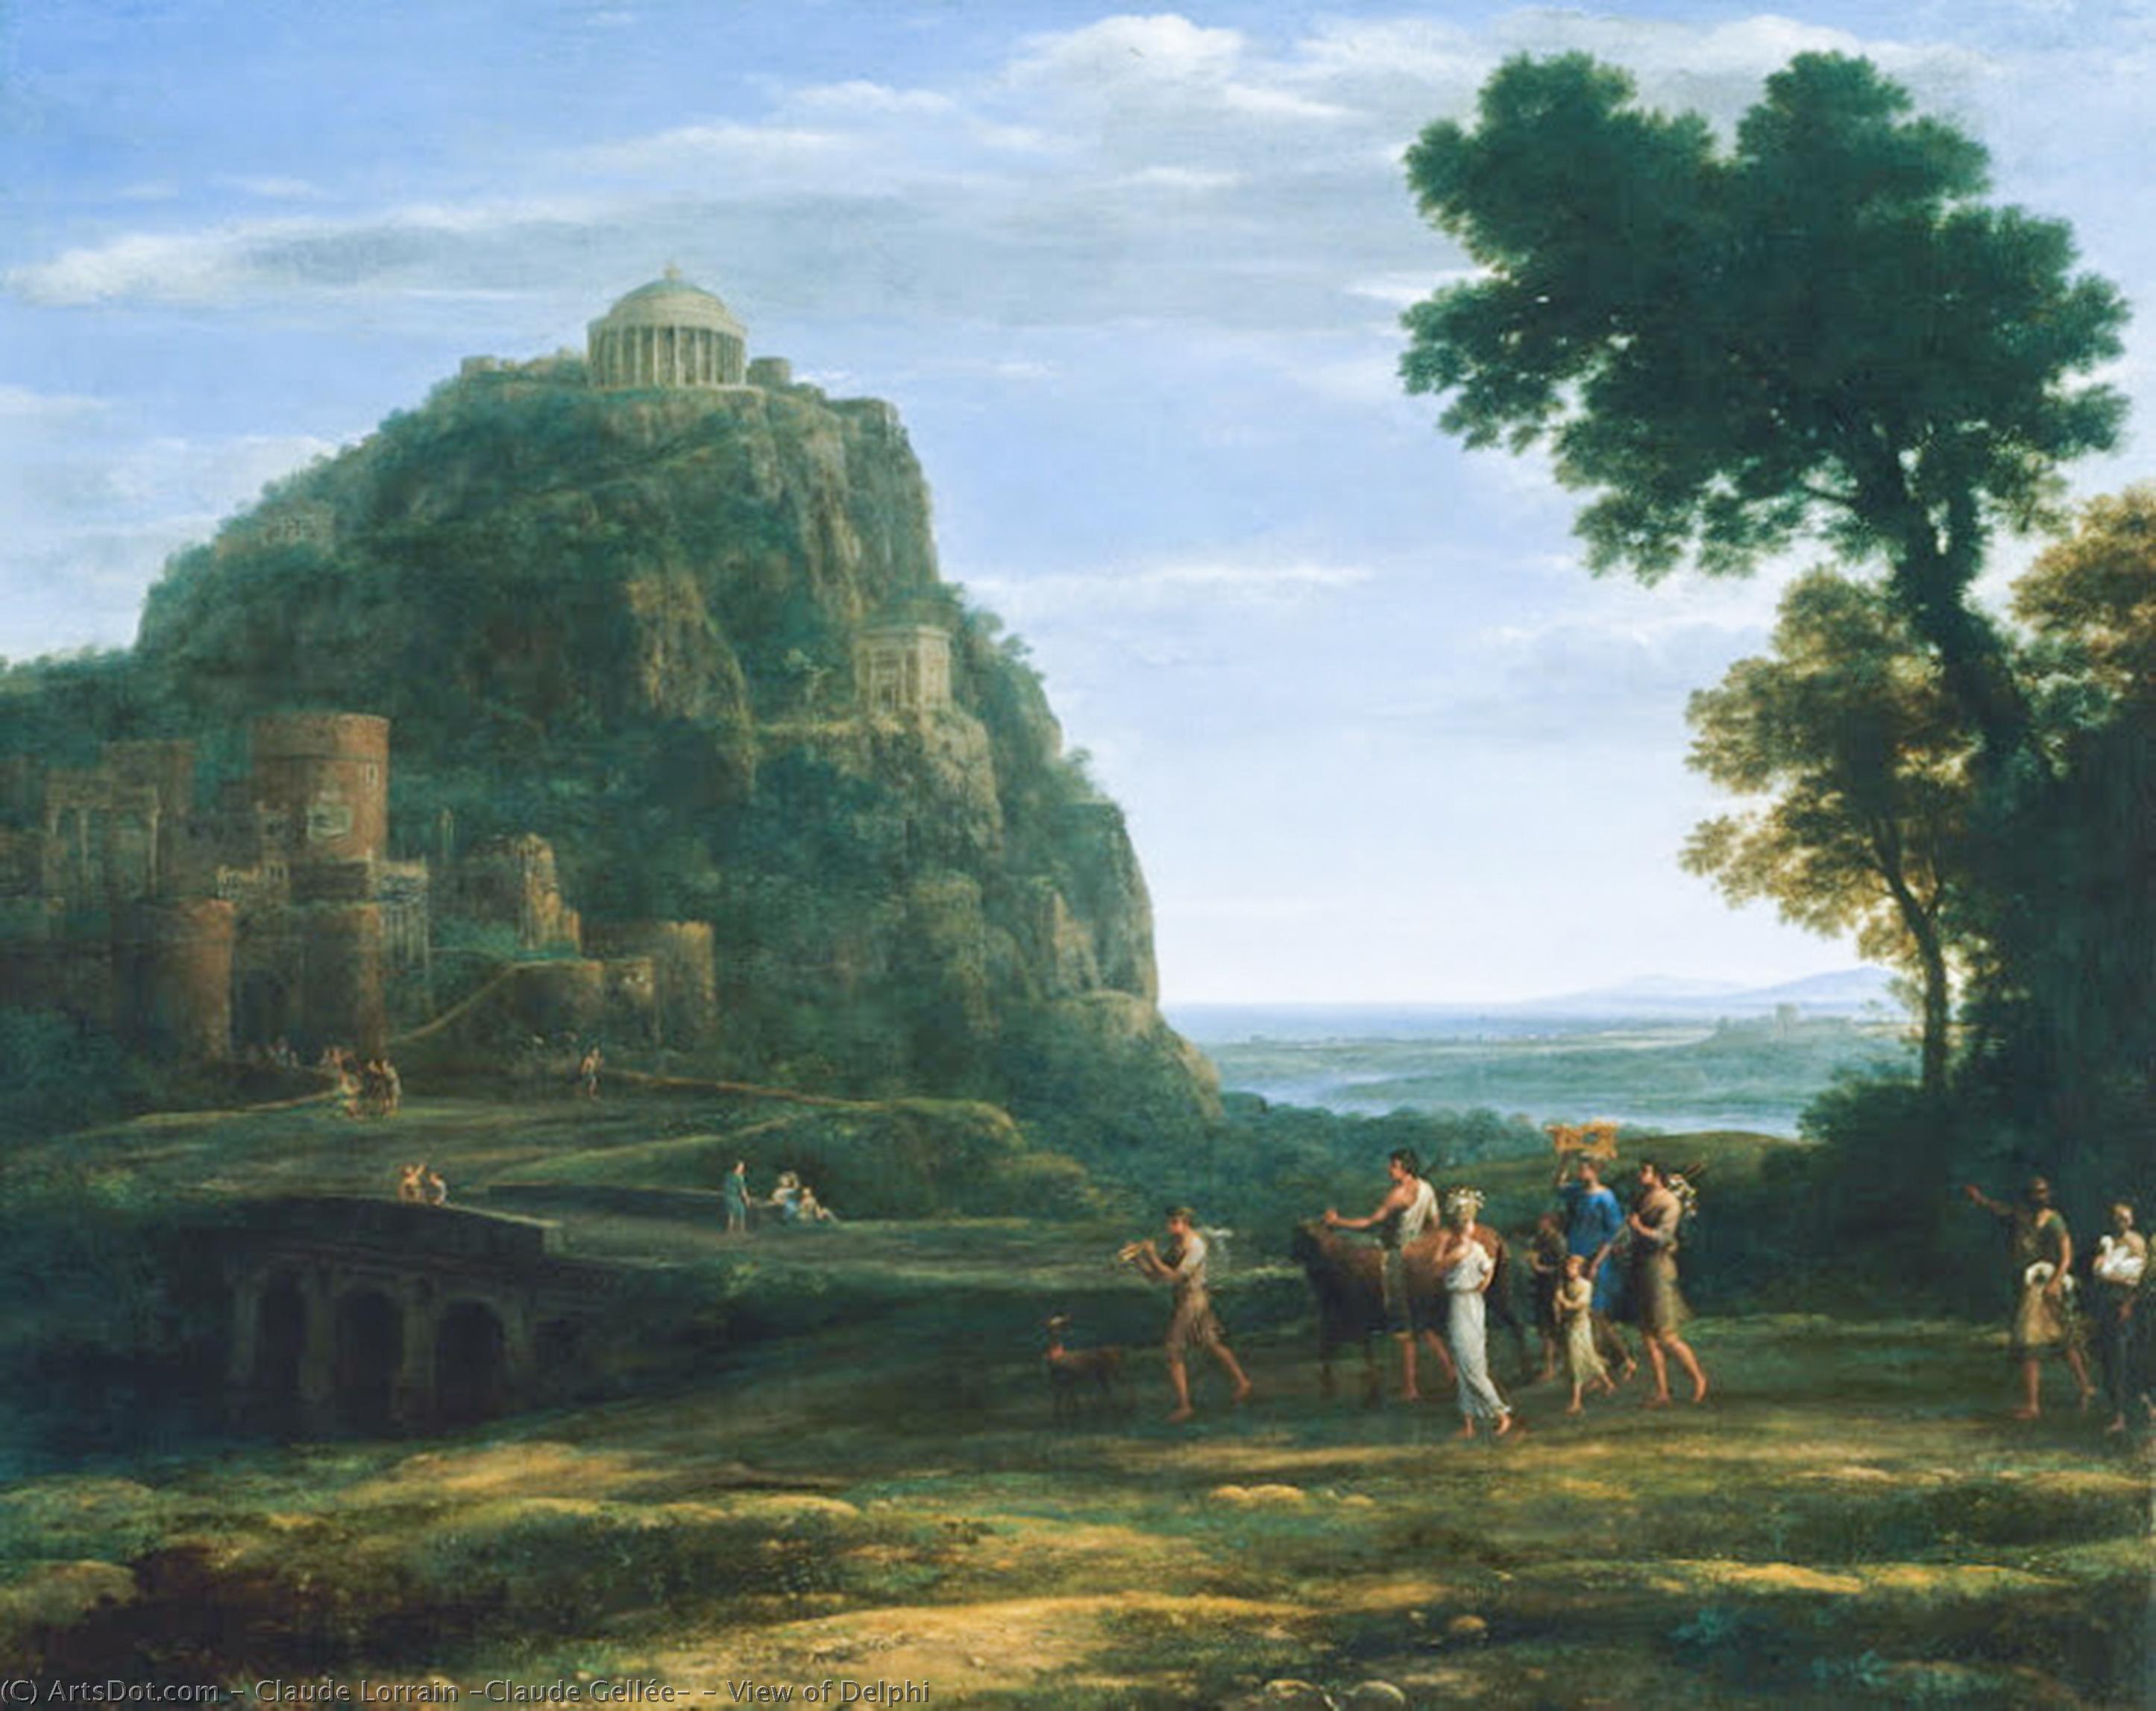 Wikioo.org - Bách khoa toàn thư về mỹ thuật - Vẽ tranh, Tác phẩm nghệ thuật Claude Lorrain (Claude Gellée) - View of Delphi